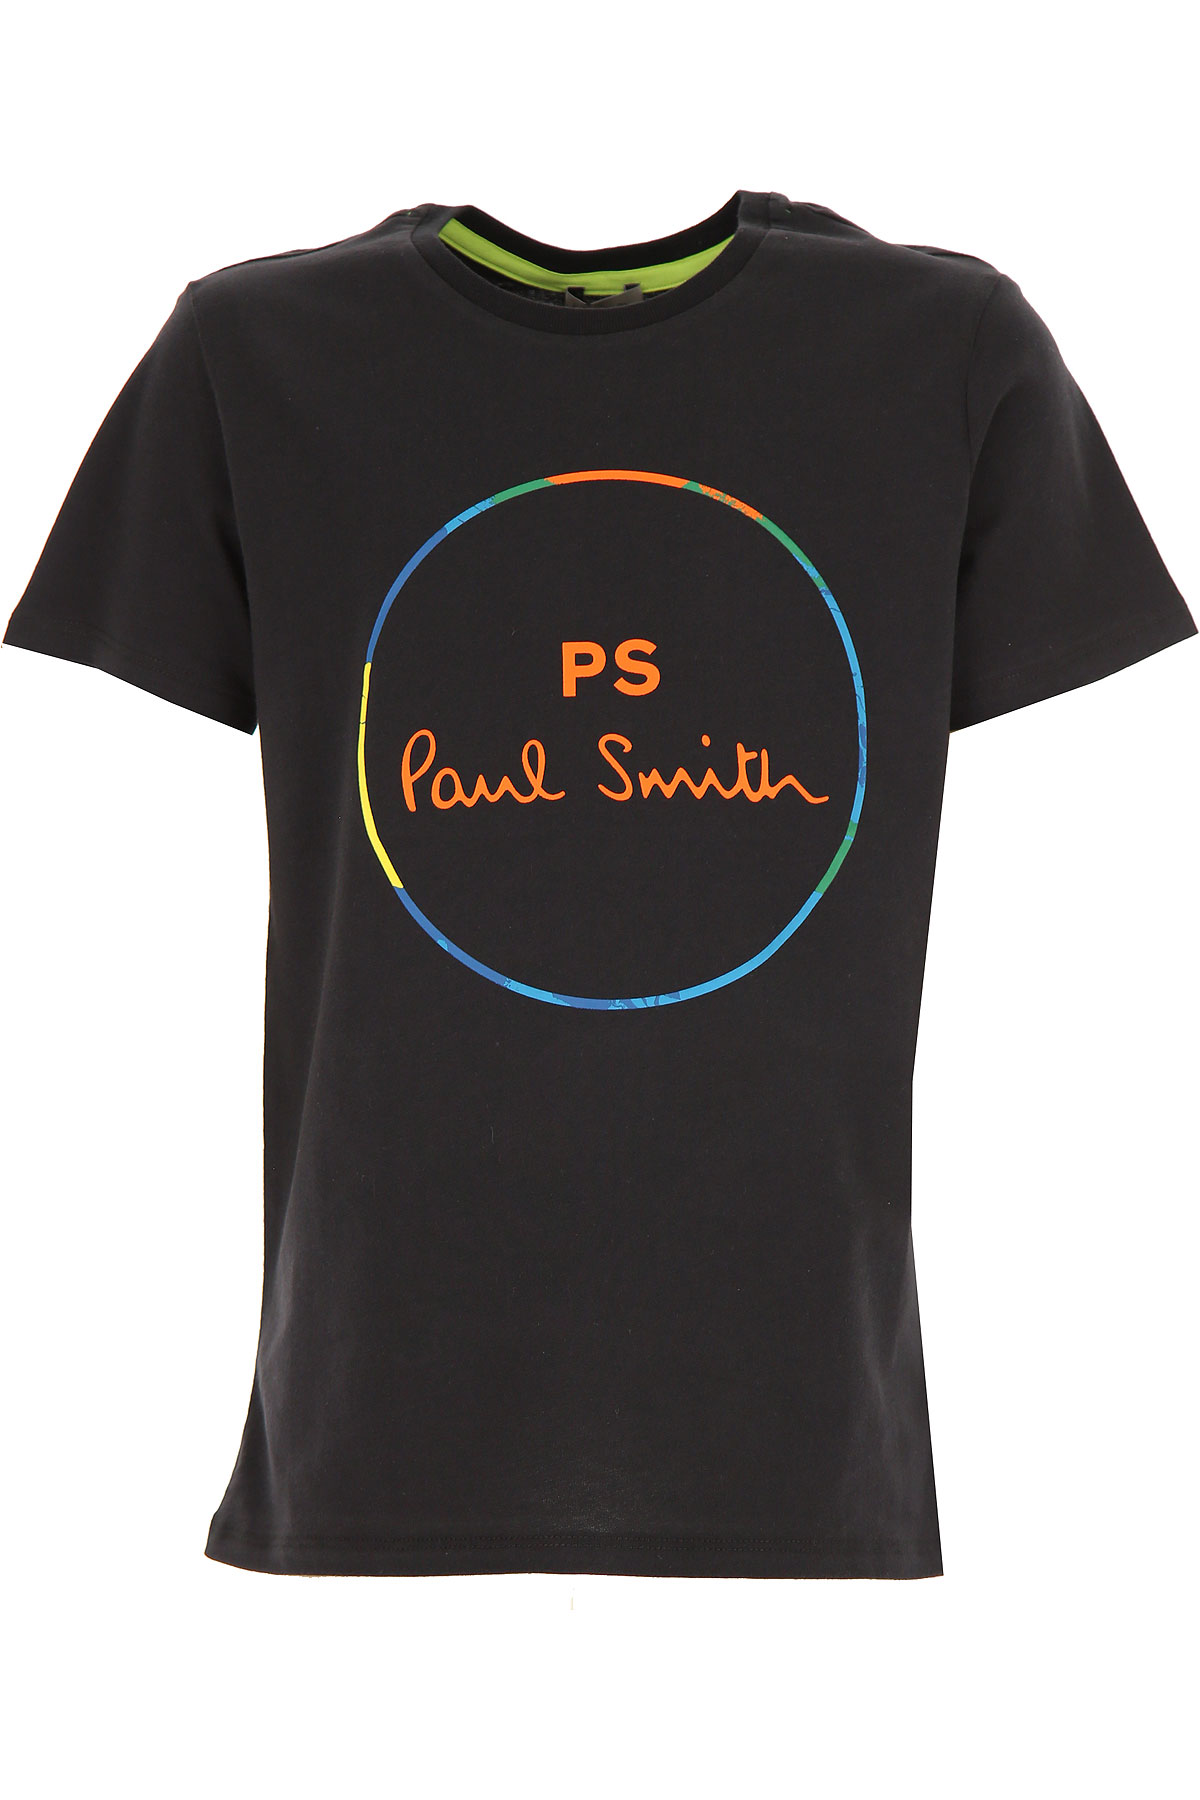 Paul Smith Kinder T-Shirt für Jungen Günstig im Sale, Schwarz, Baumwolle, 2017, 10Y 12Y 14Y 16Y 2Y 3Y 4Y 5Y 6Y 8Y